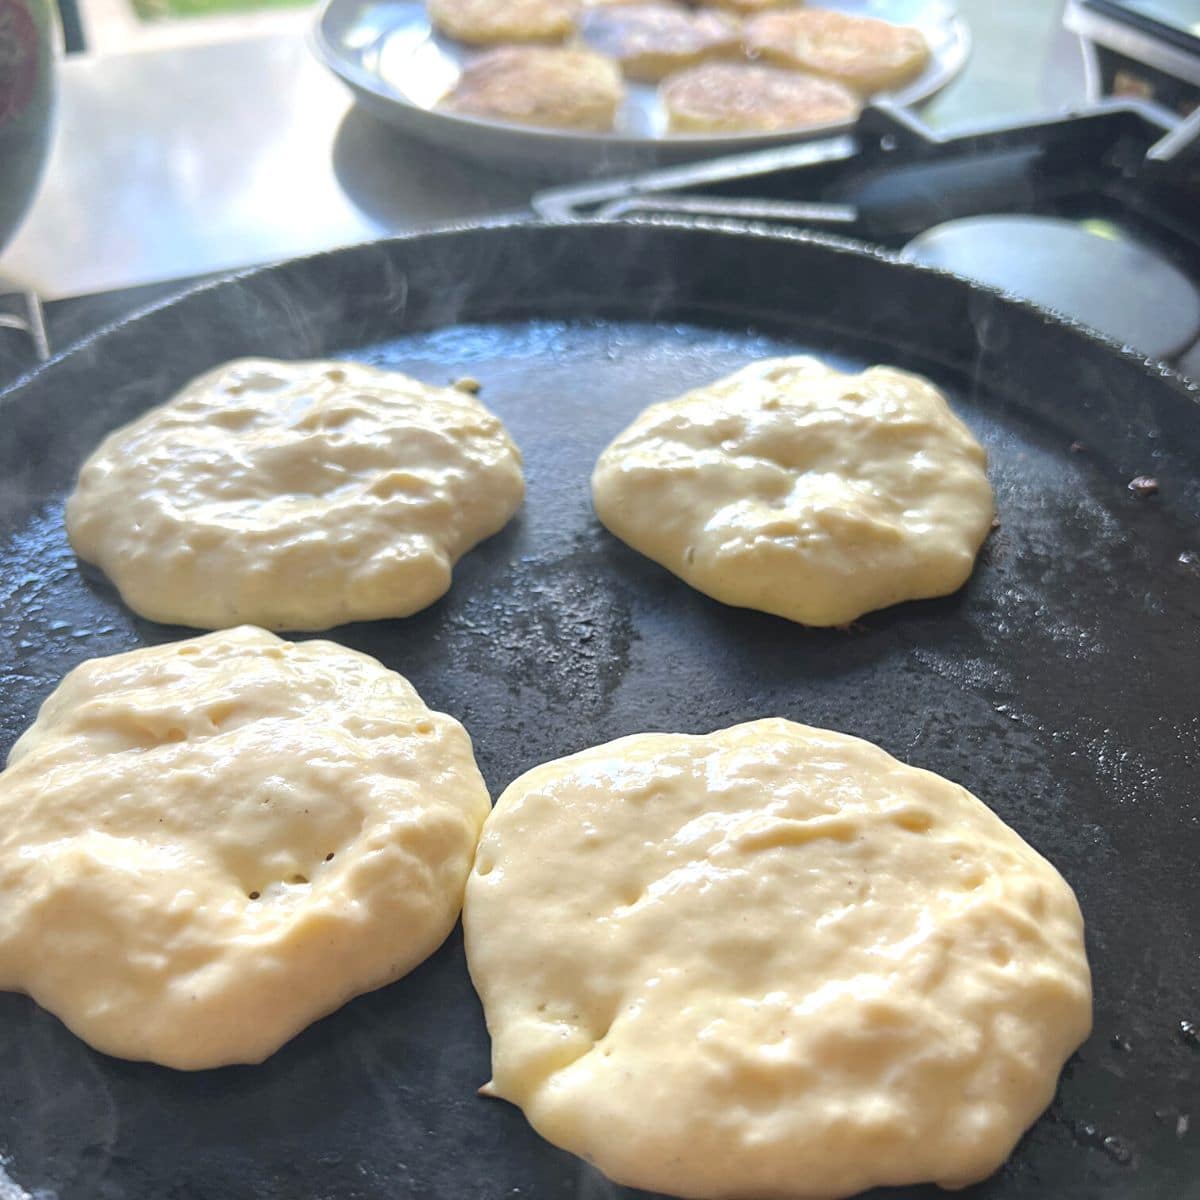 Four pancakes cooking on iron skillet.